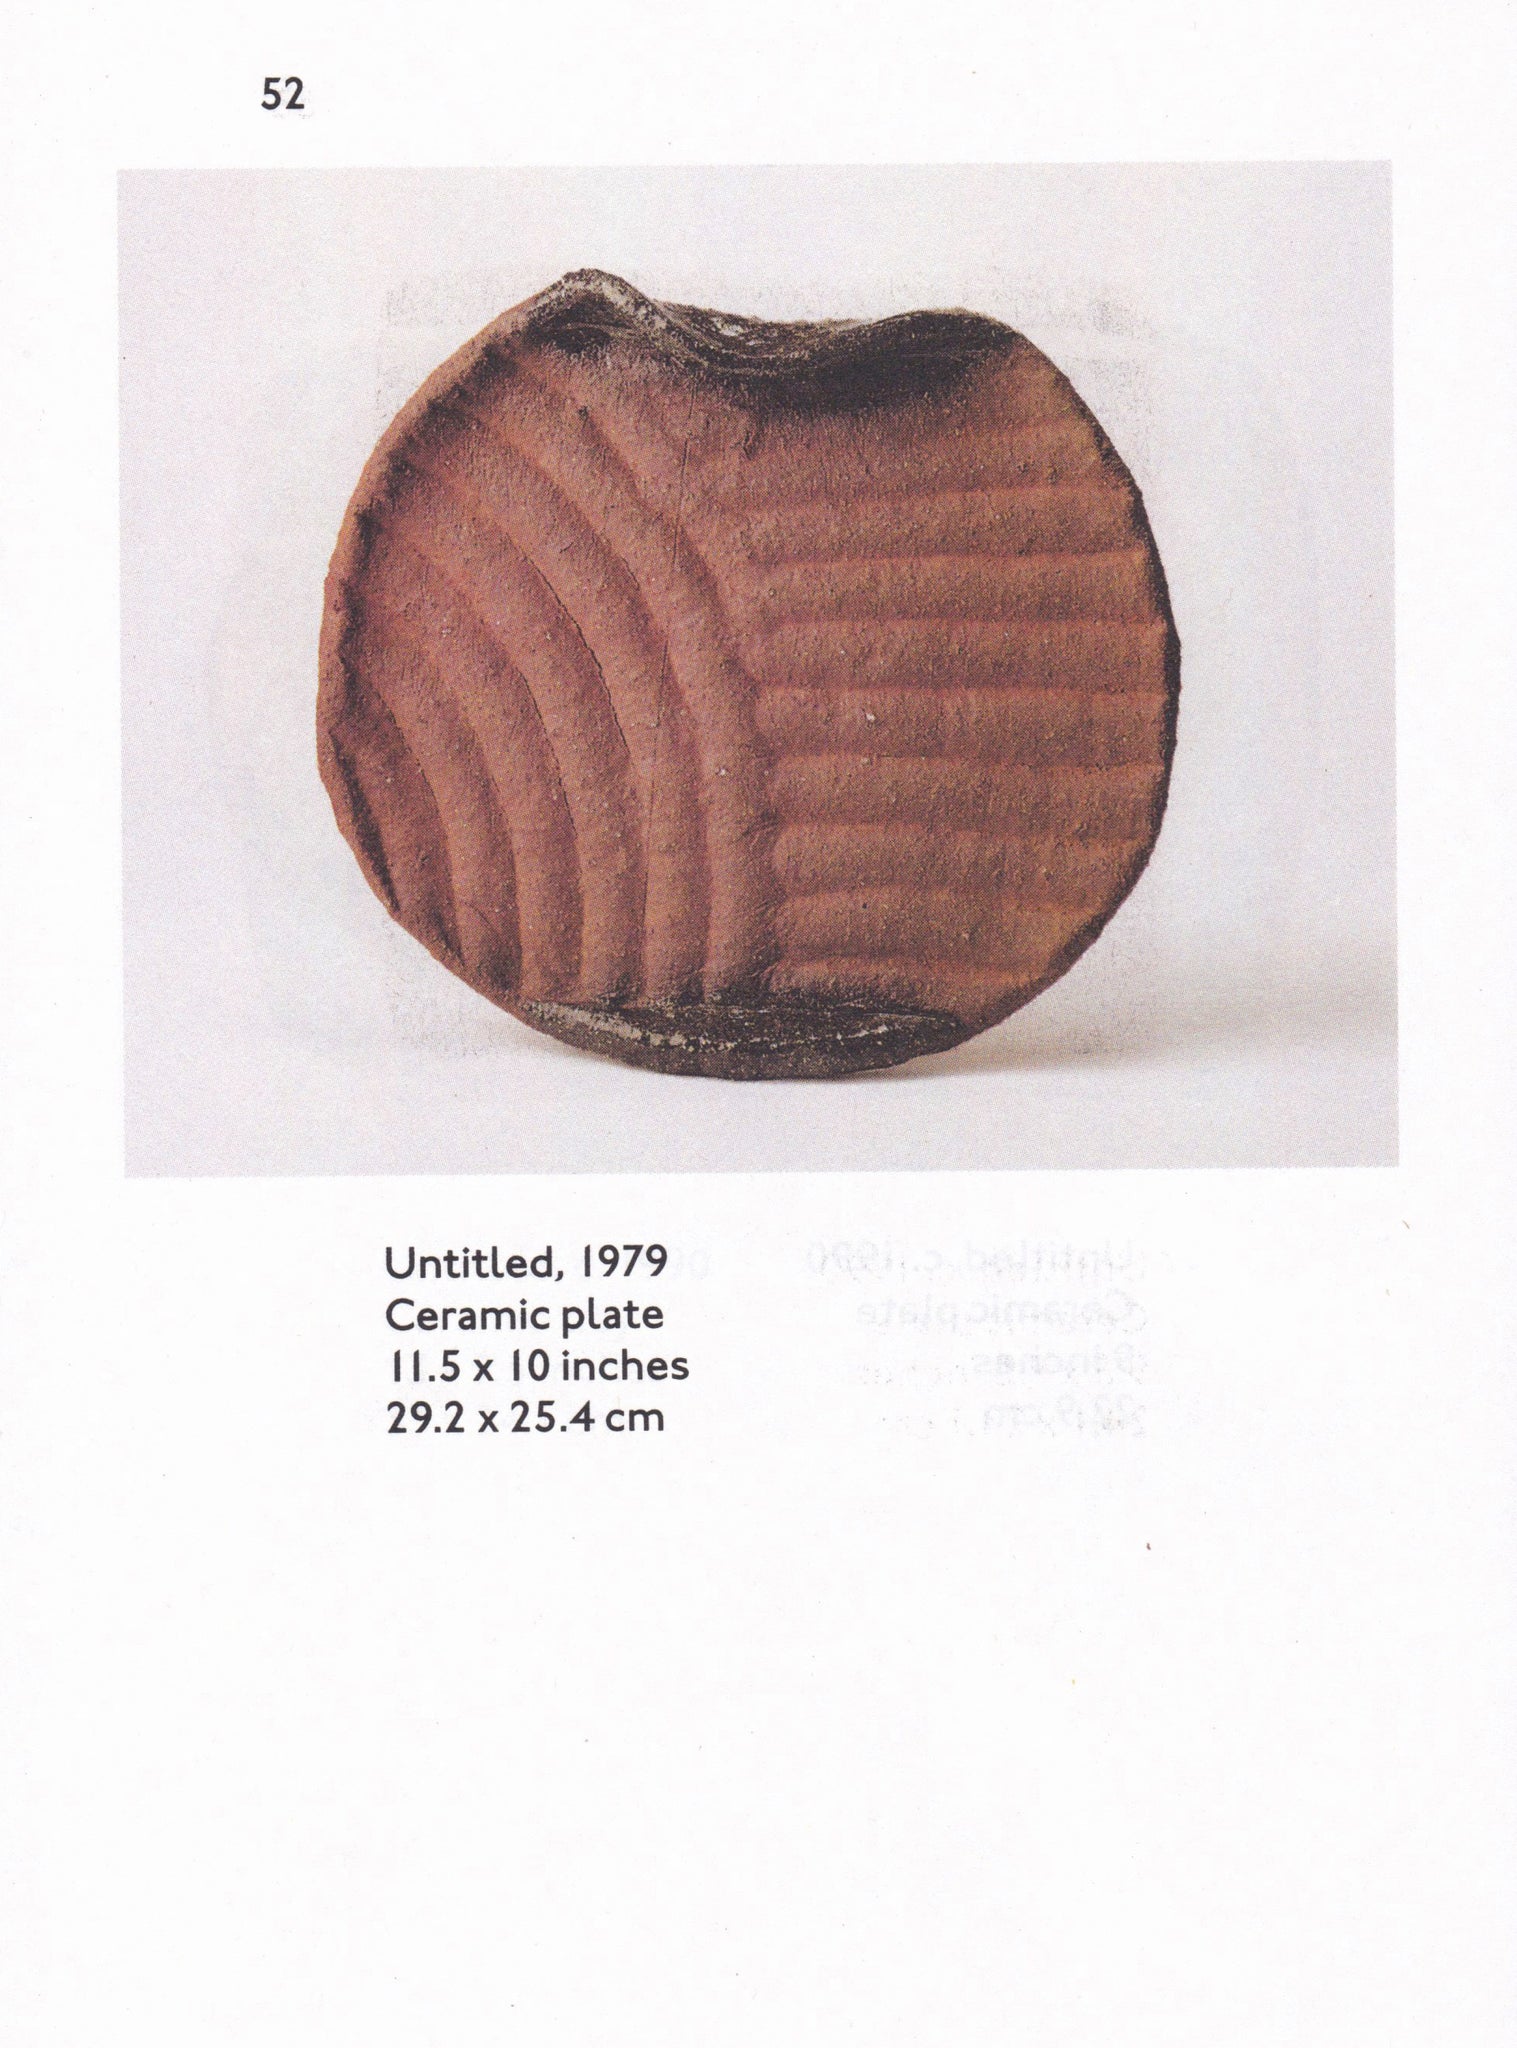 JB BLUNK Cups, plates, bowls & sculptures: ceramics 1950–1999 — 3rd Edition